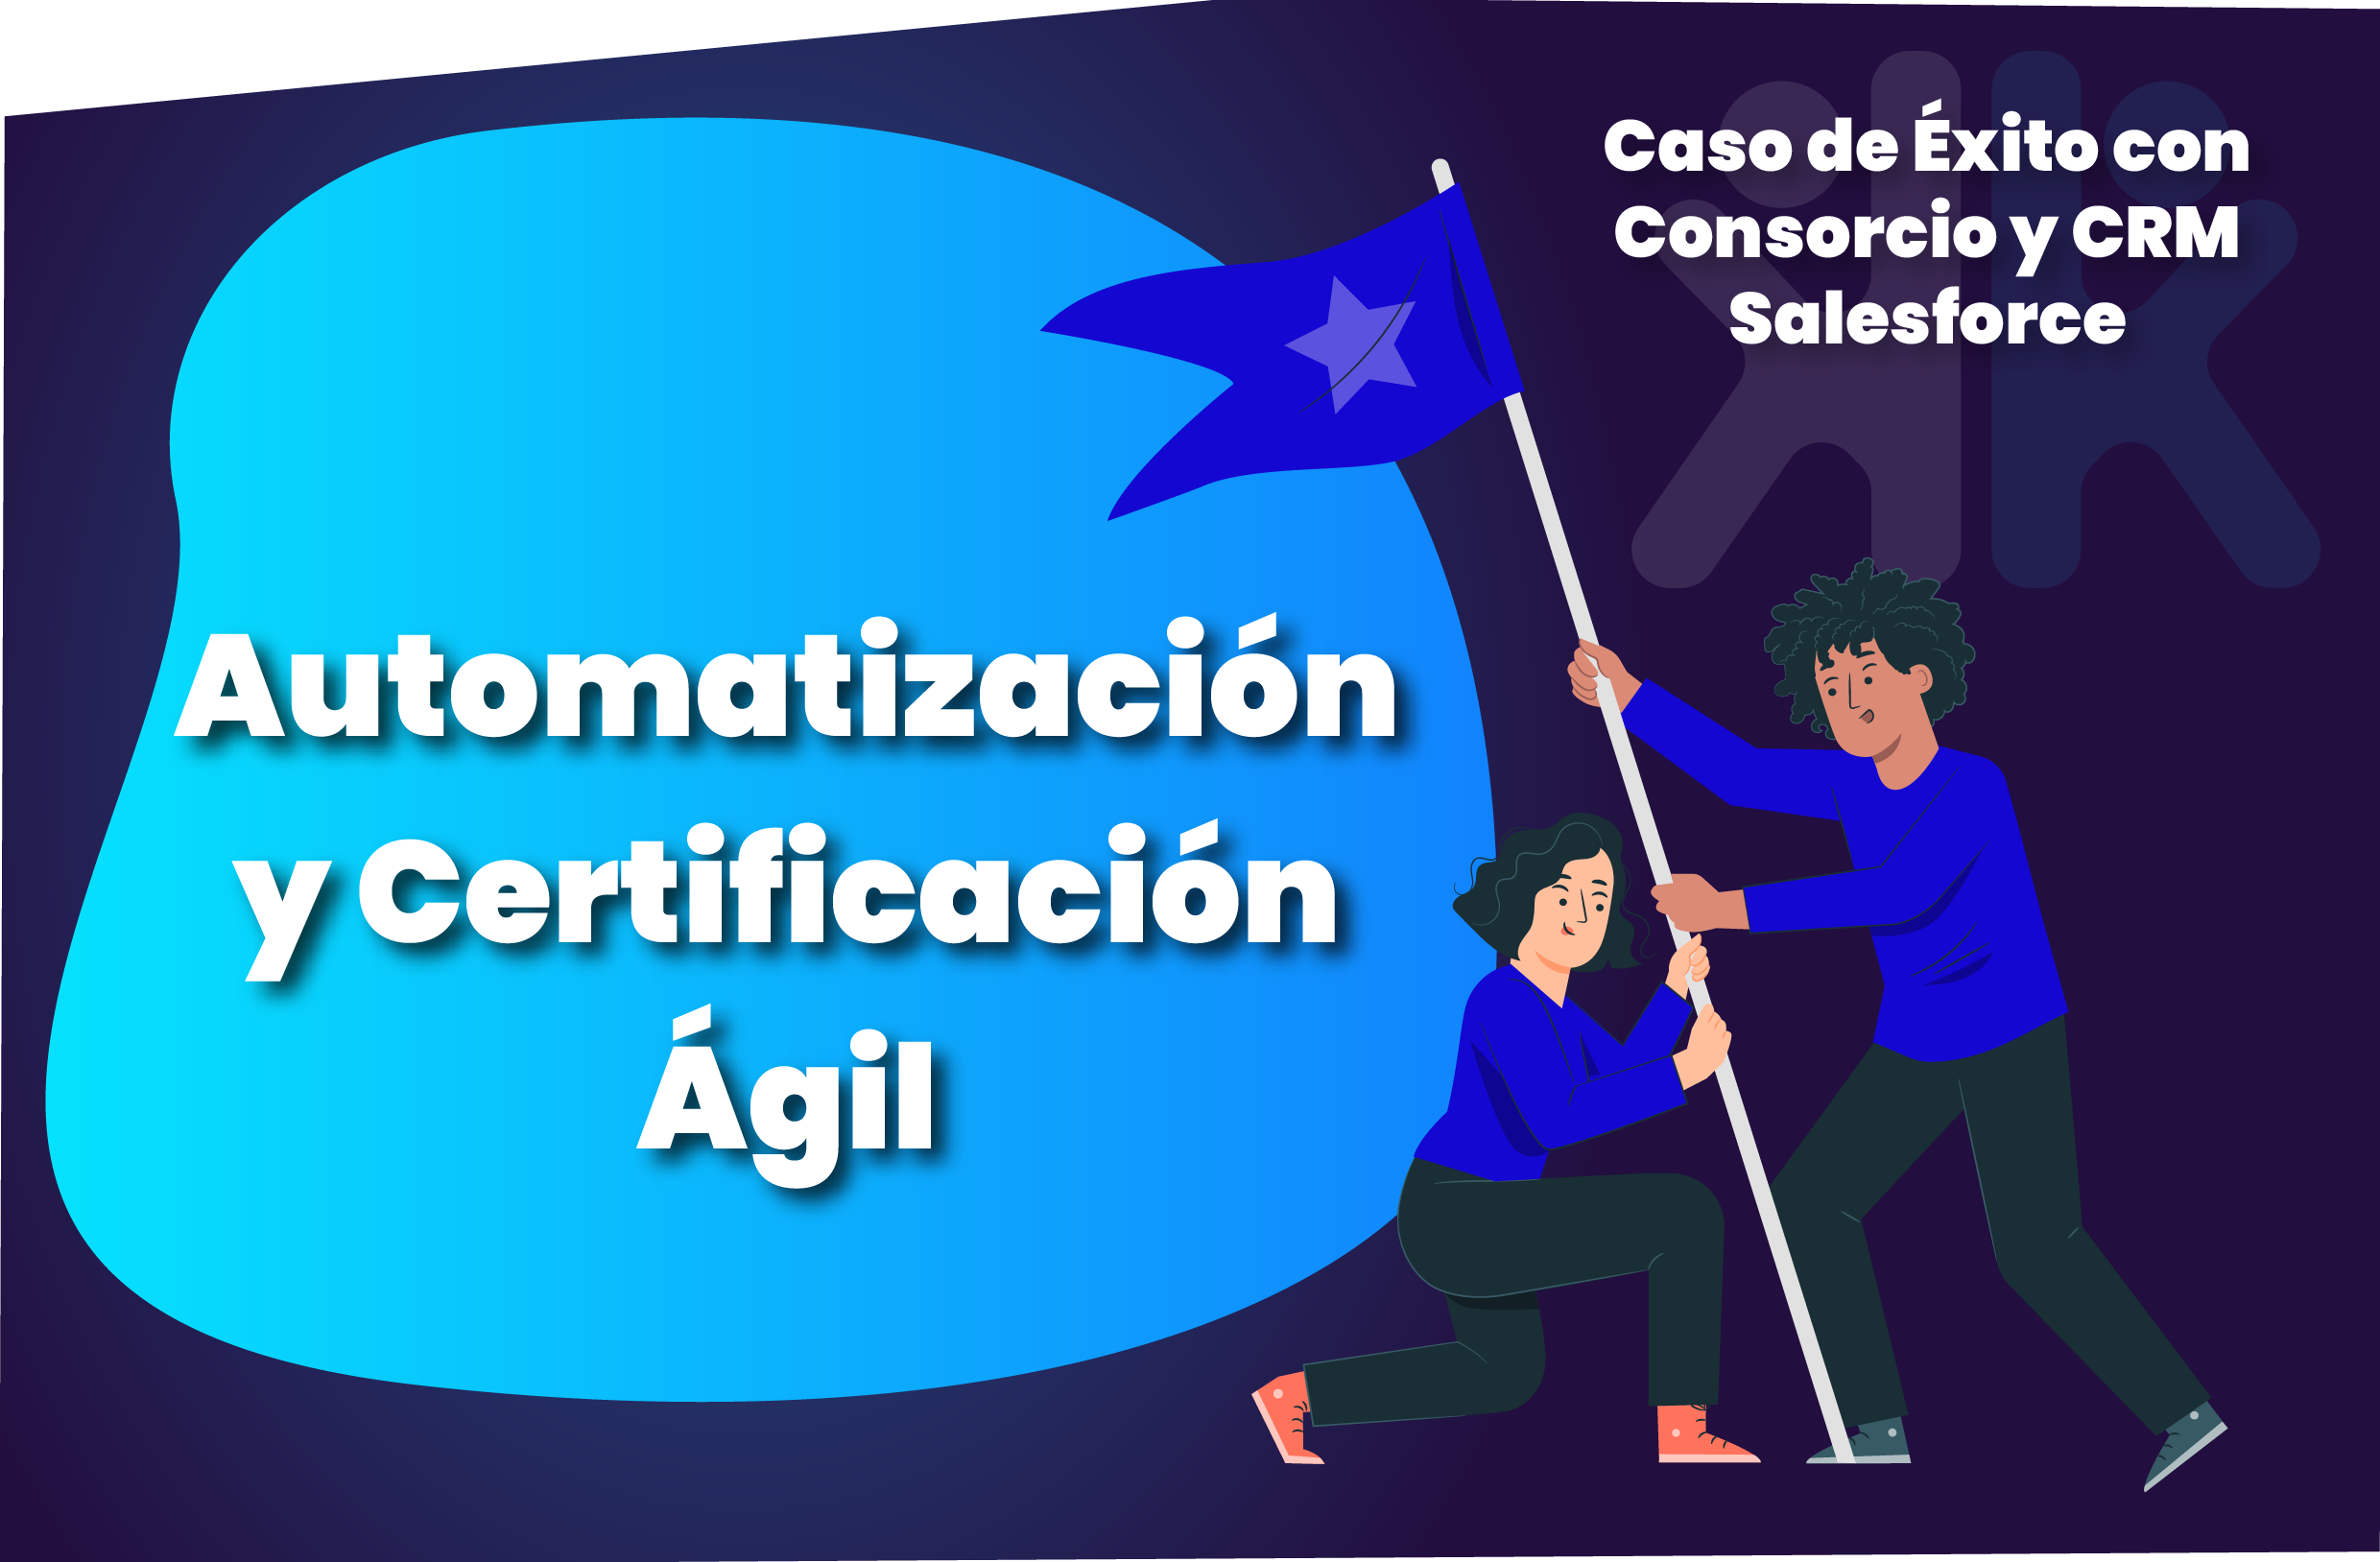 Caso de éxito: Automatización y Certificación Ágil con Consorcio y CRM Salesforce